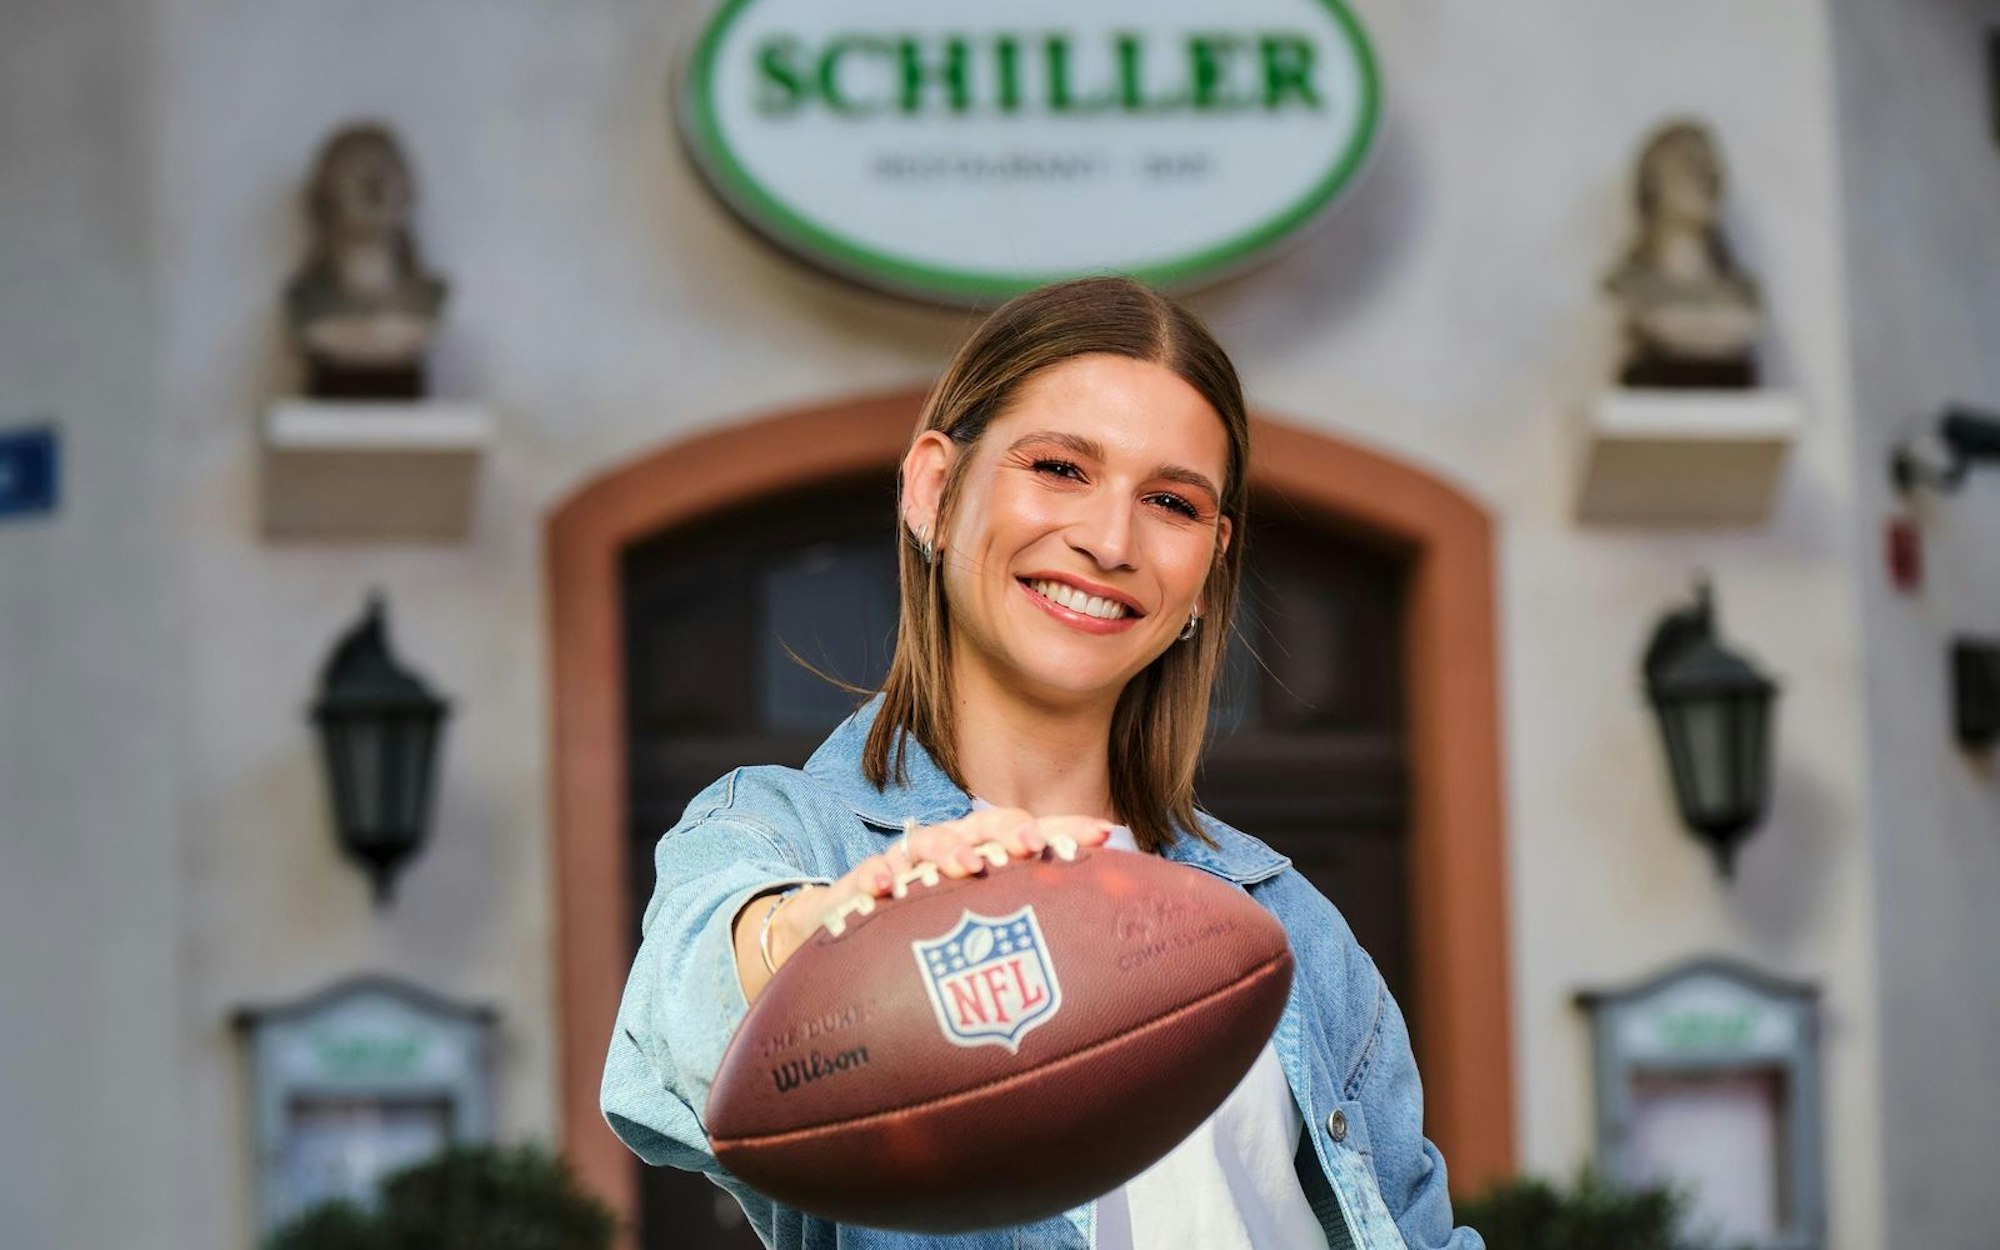 NFL-Moderatorin Jana Wosnitza ist bald in der Kölner Schillerallee, in der RTL-Serie „Unter uns“ zu sehen - in einer Gastrolle. (Bild: RTL / Stefan Behrens)